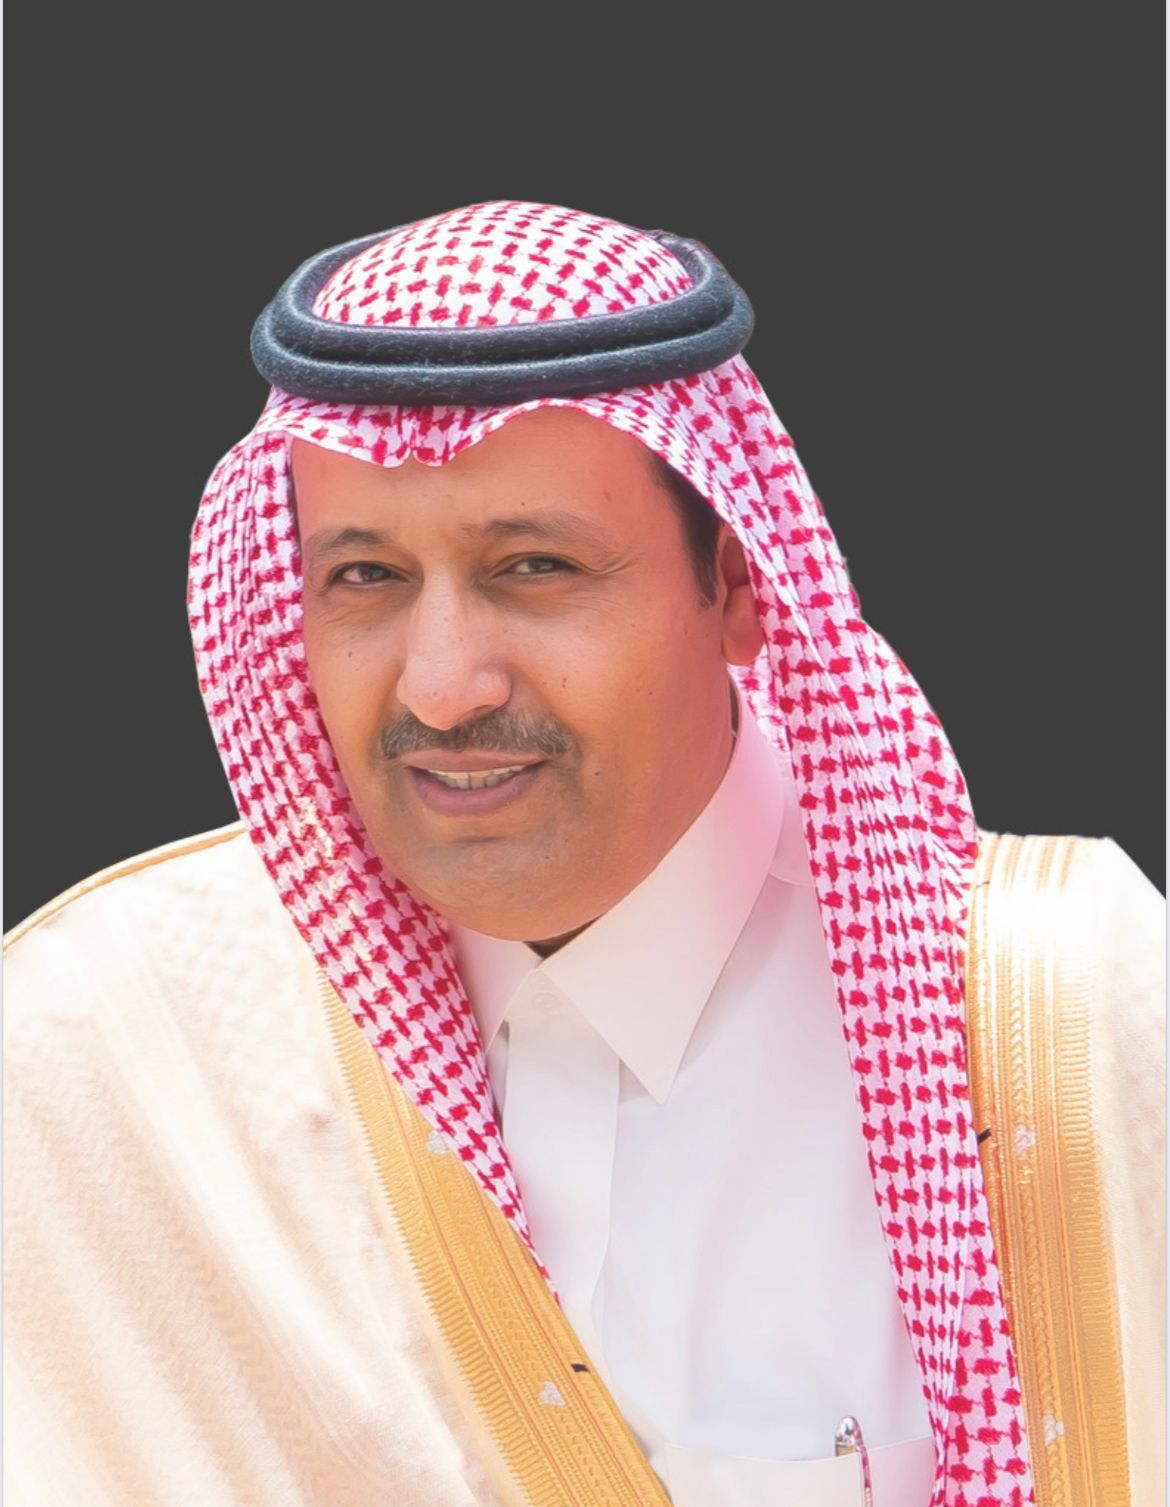 أمير الباحة : من نعم الله أن منّ علينا بفرحة رؤية سيدي خادم الحرمين الشريفين سالماً معافى